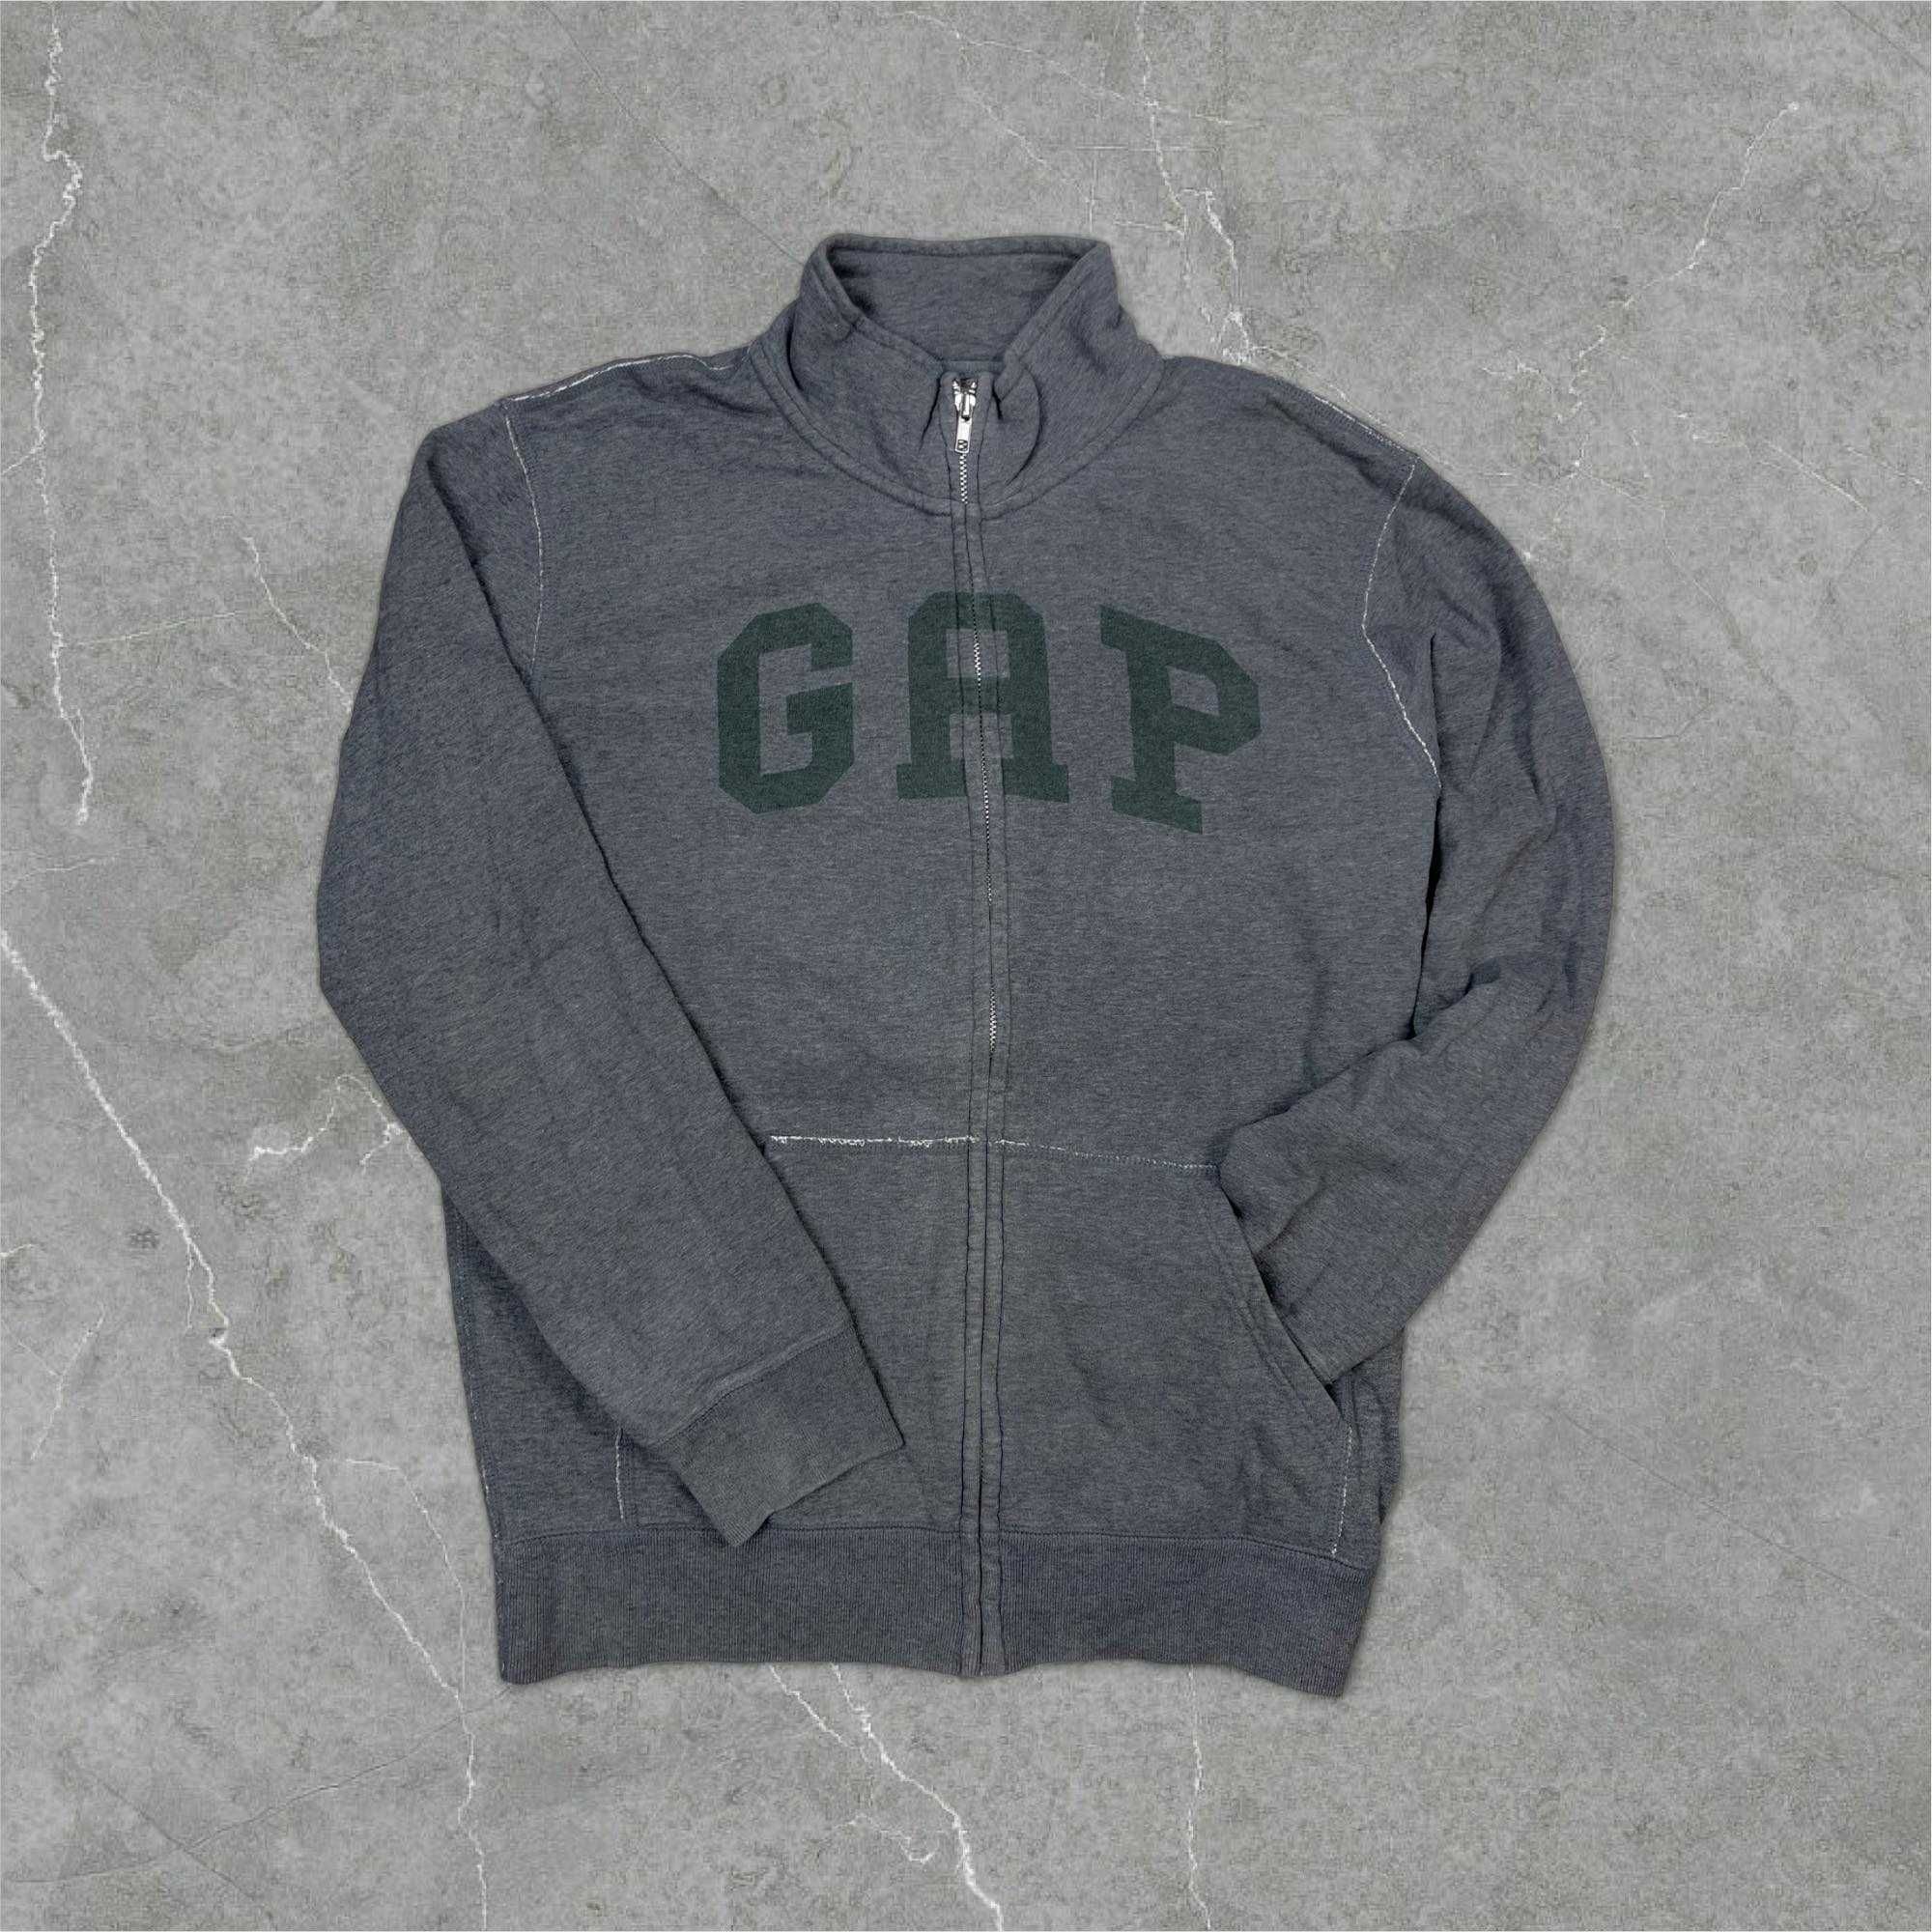 Bluza Gap Męska rozpinana szara bawełniana Vintage retro logo